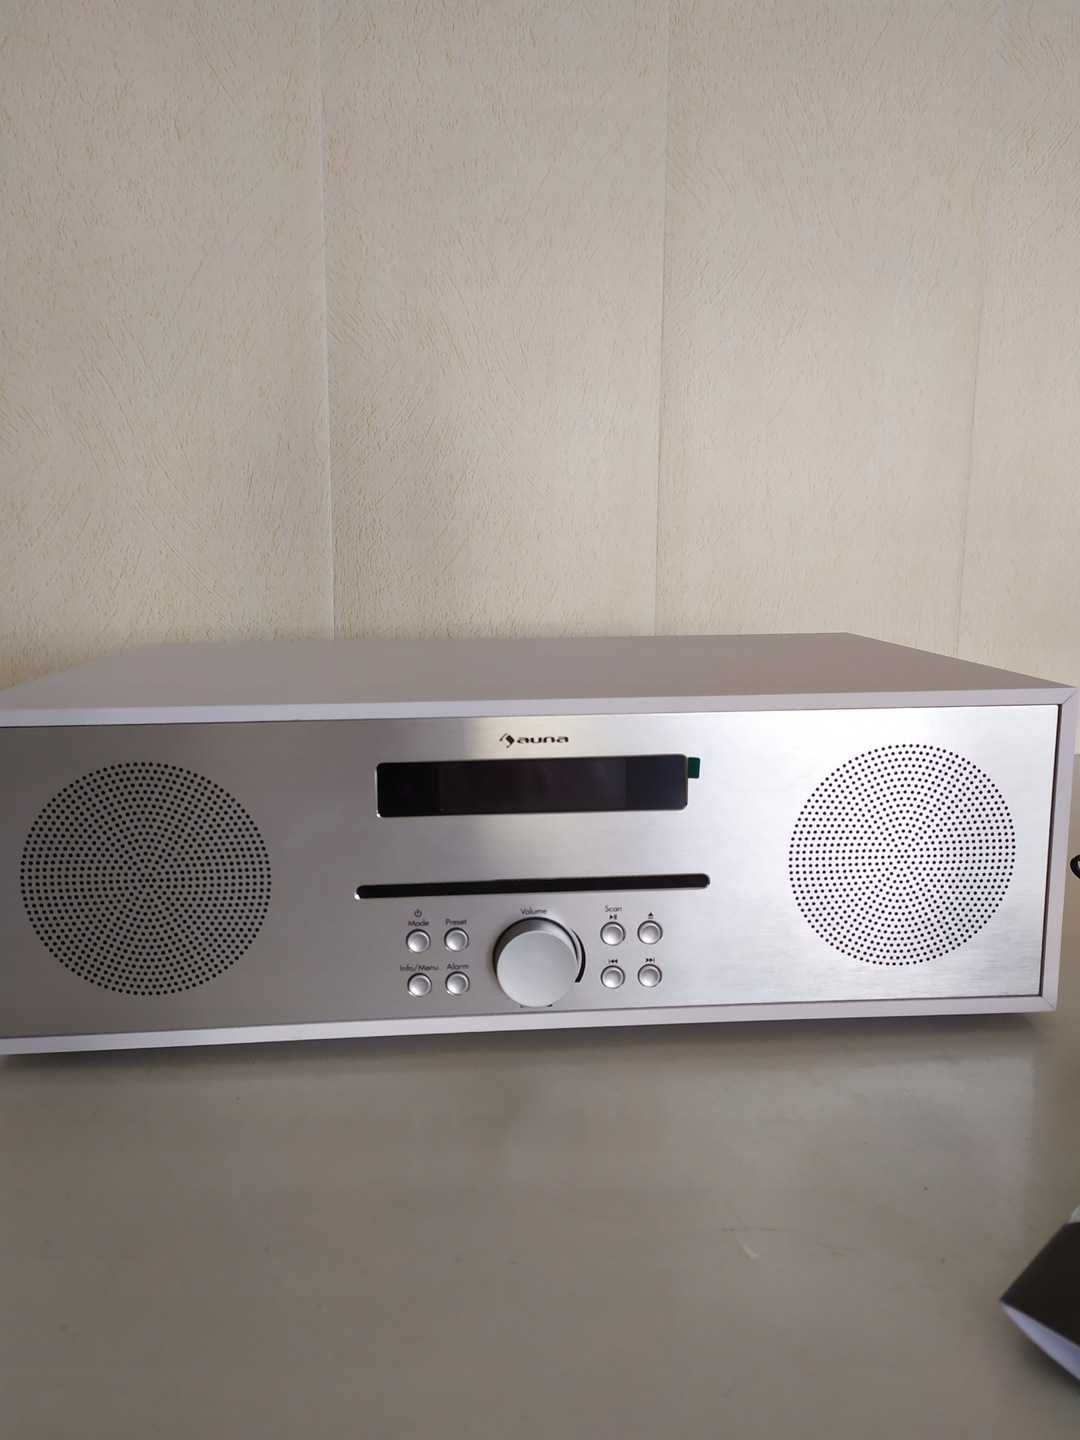 Radio Silver Star CD-FM Bluetooth